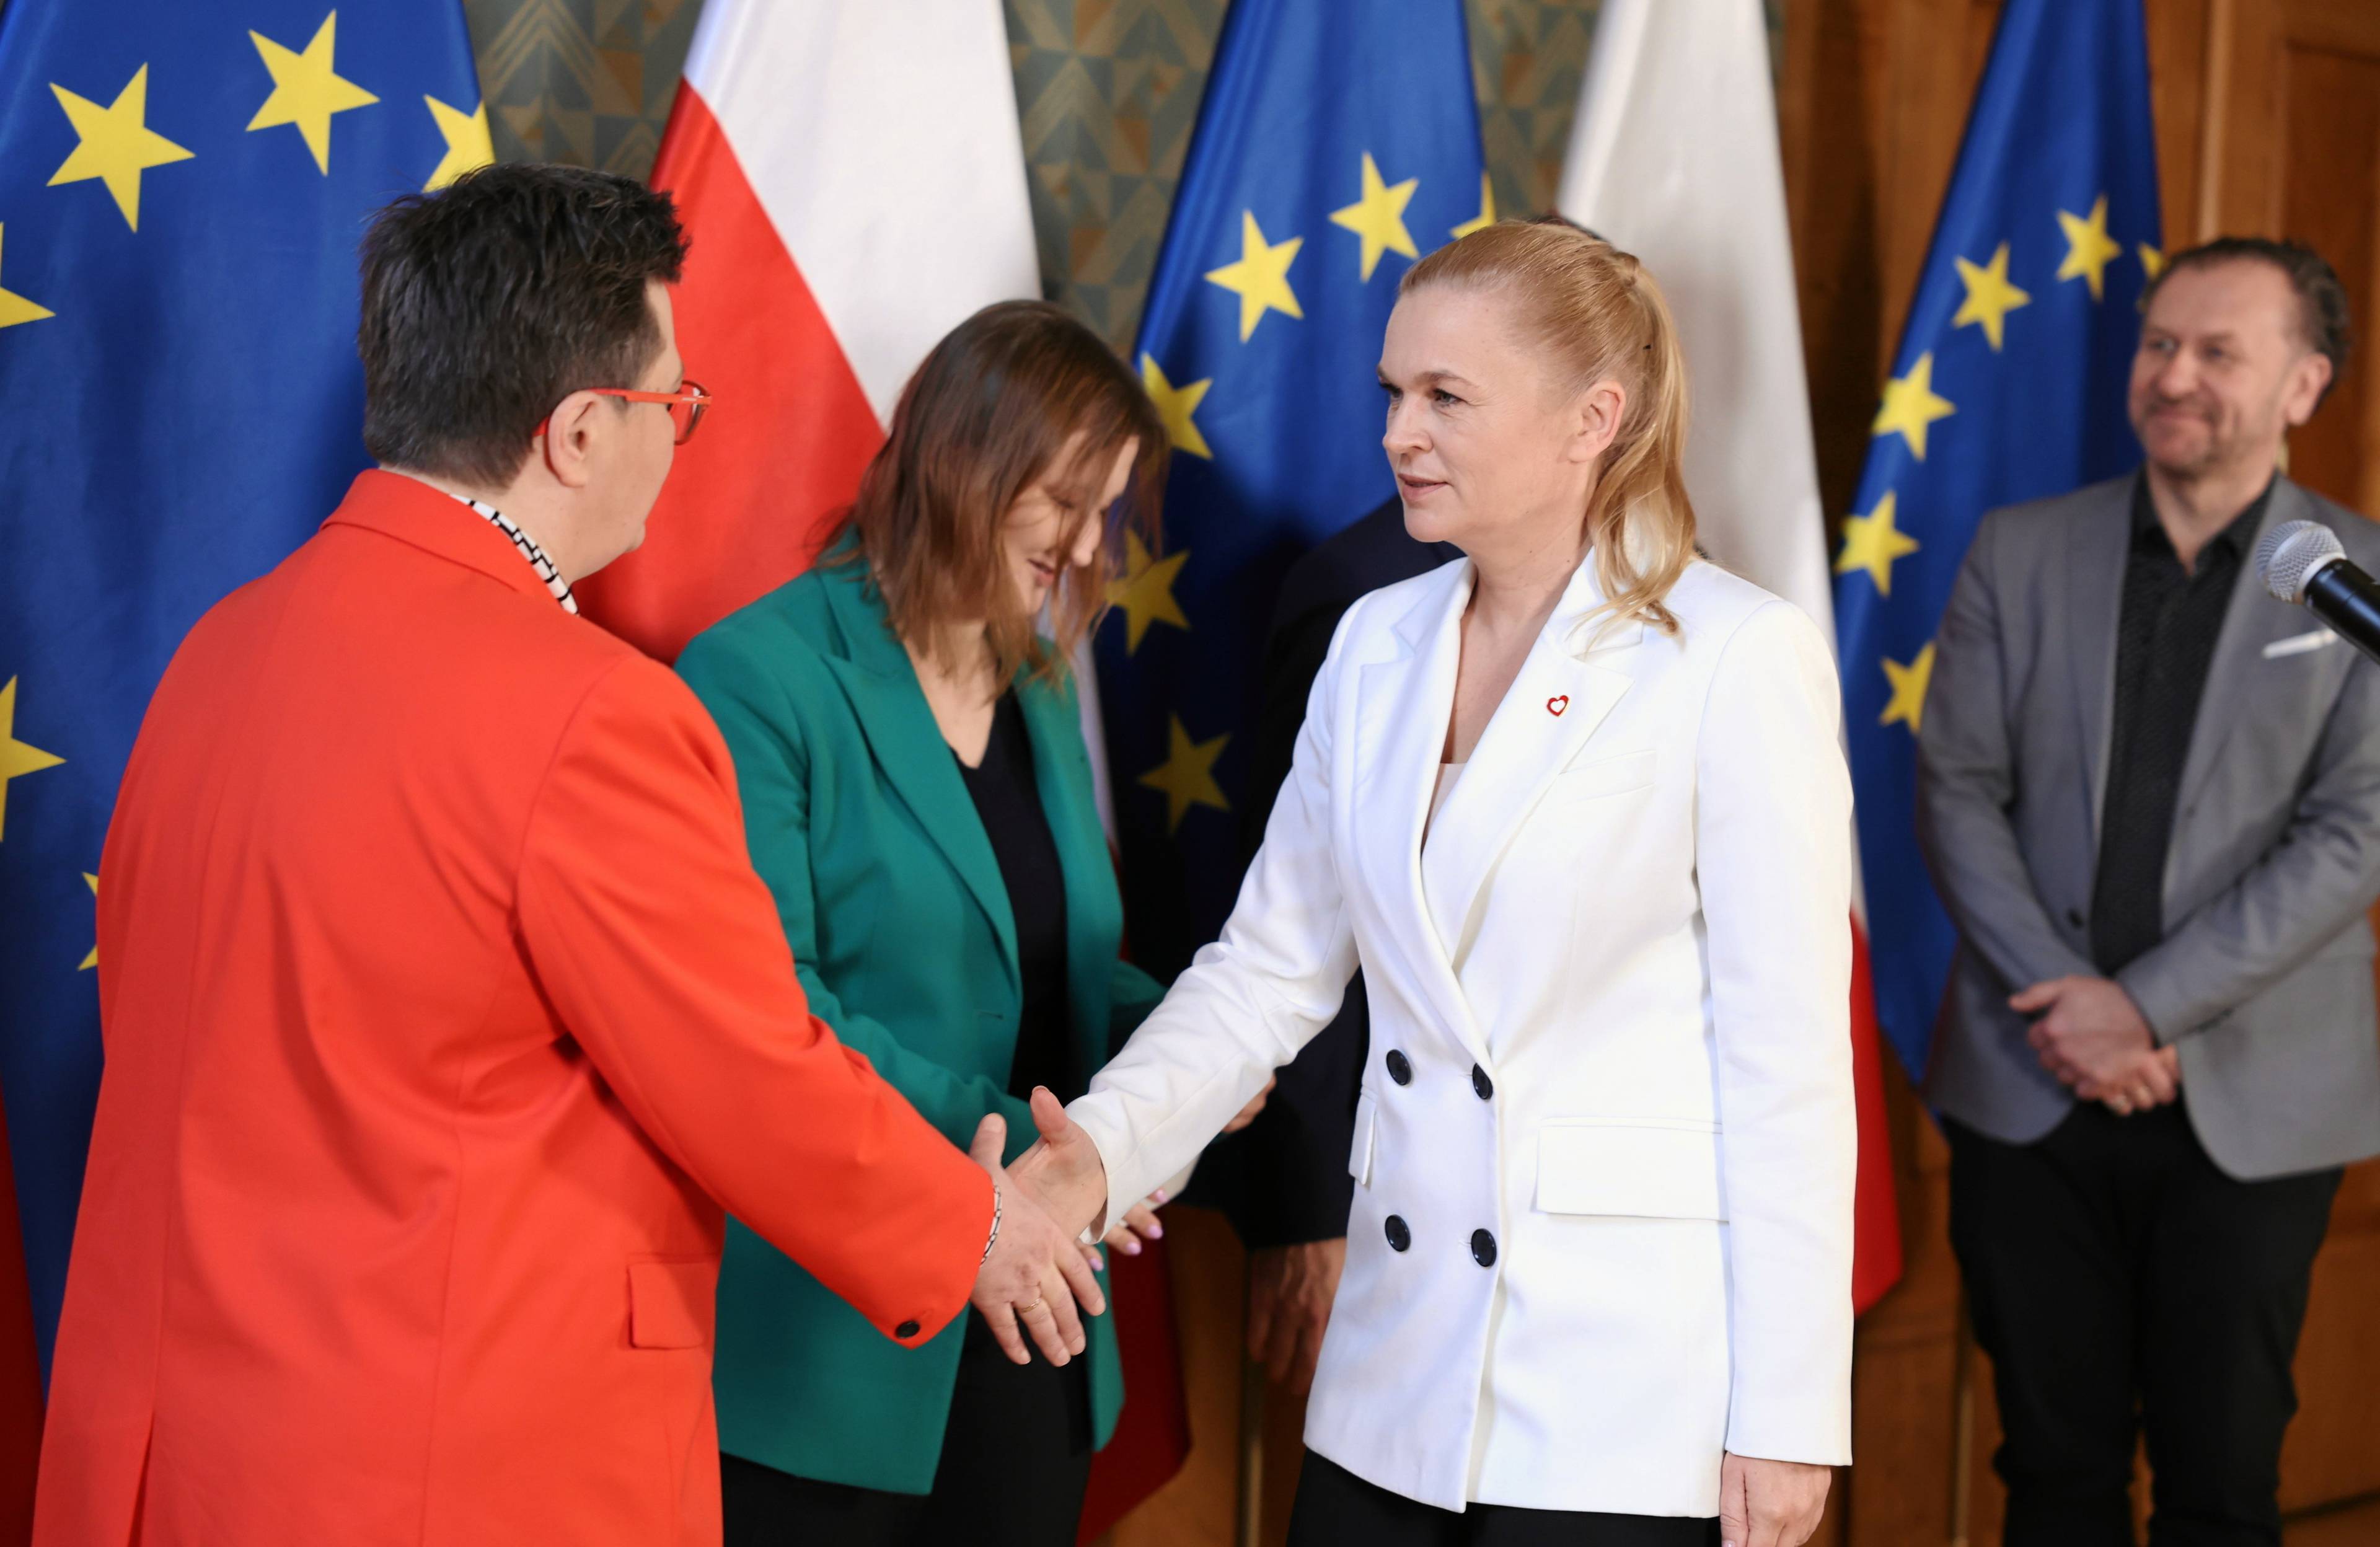 Trzy kobiety: w czerwonym, białym i zielonym żakiecie na tle polskich i unijnych flag